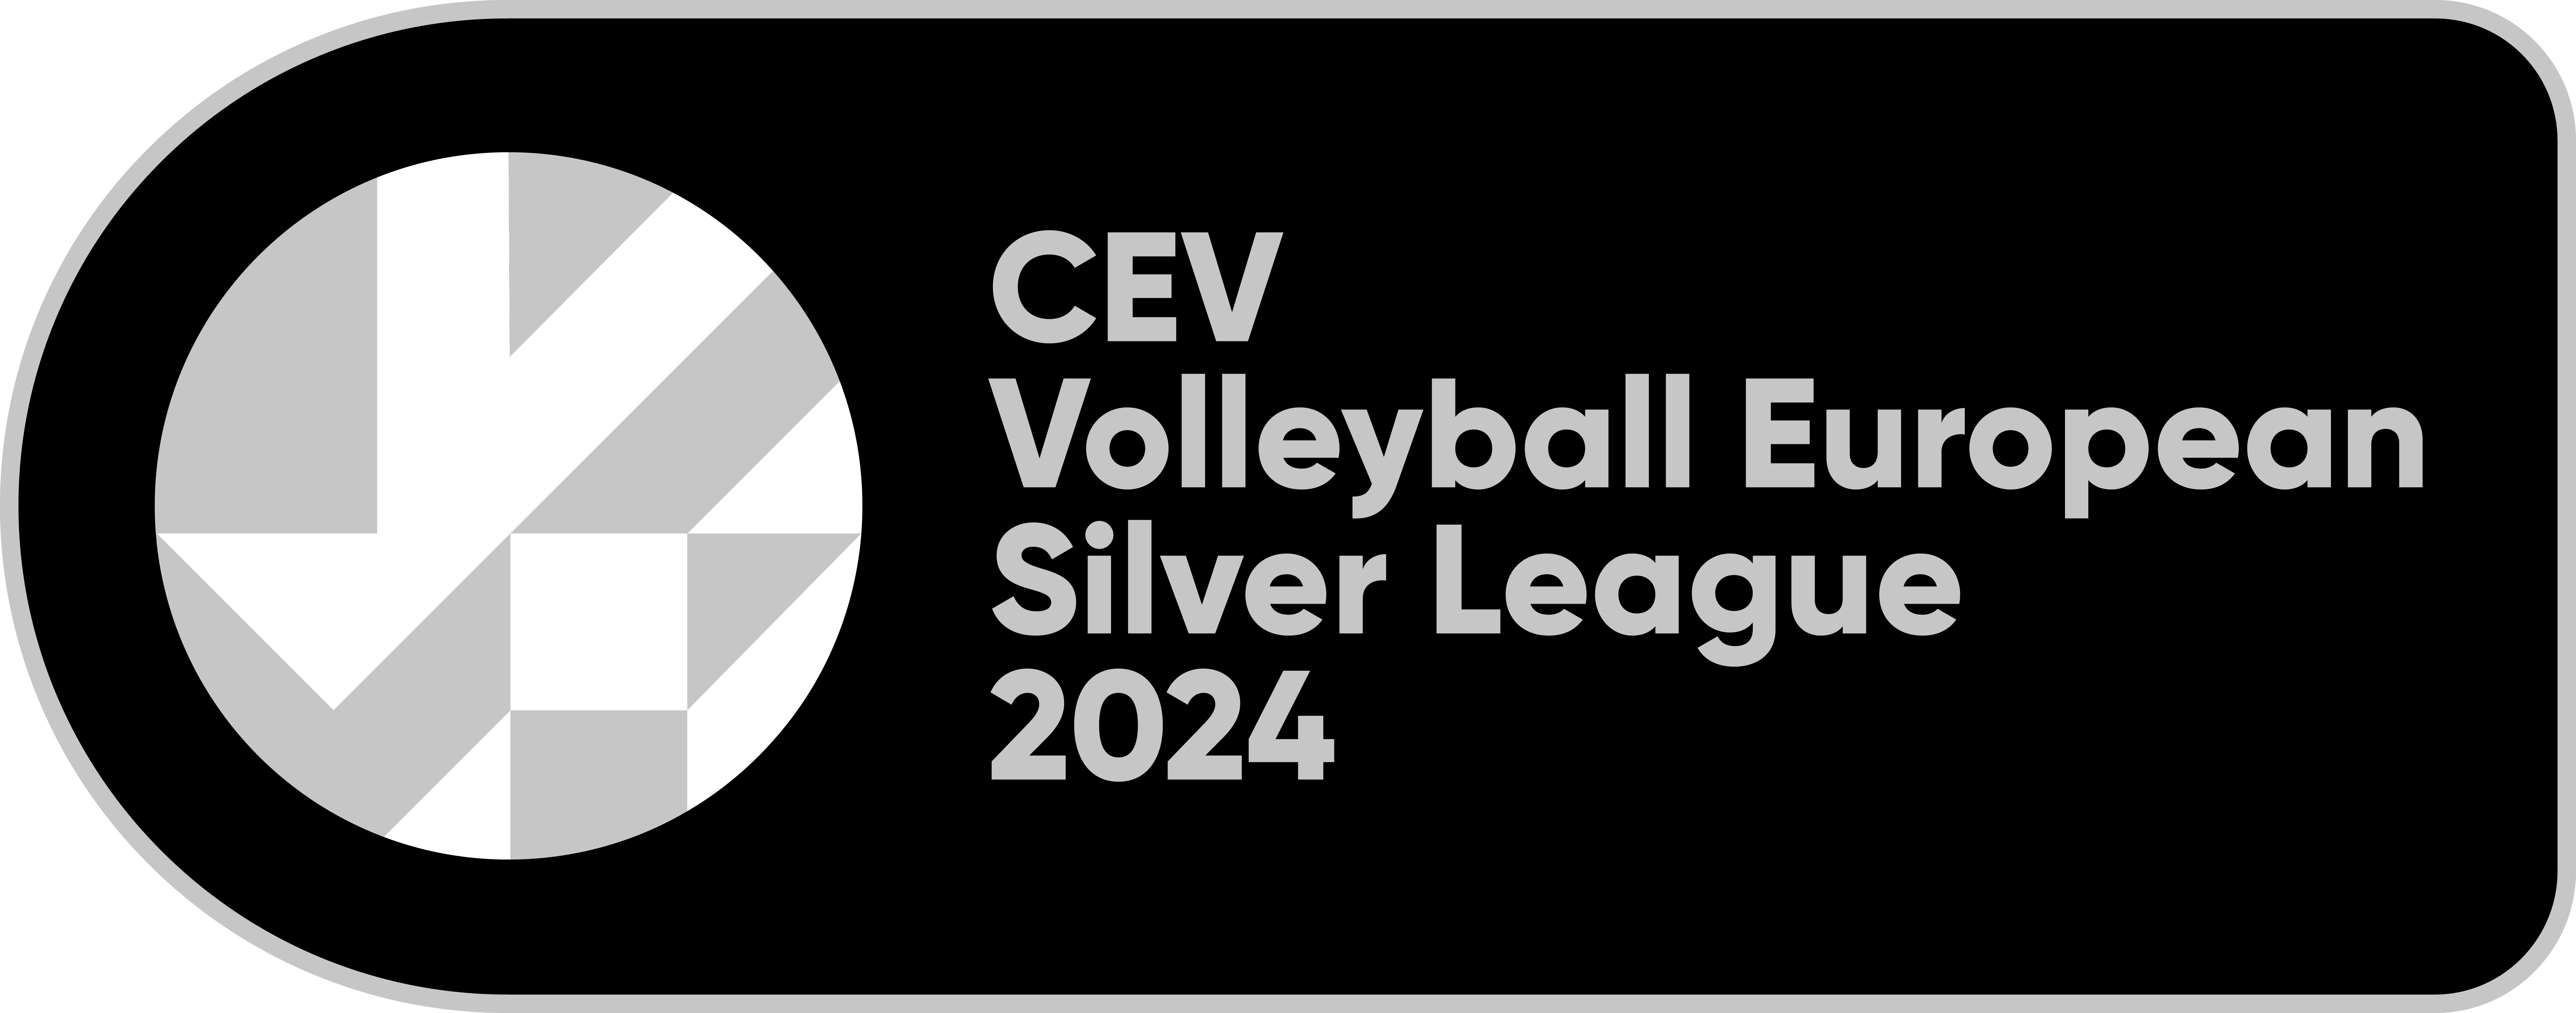 https://www.cev.eu/national-team/european-leagues/european-silver-league/women/2024/